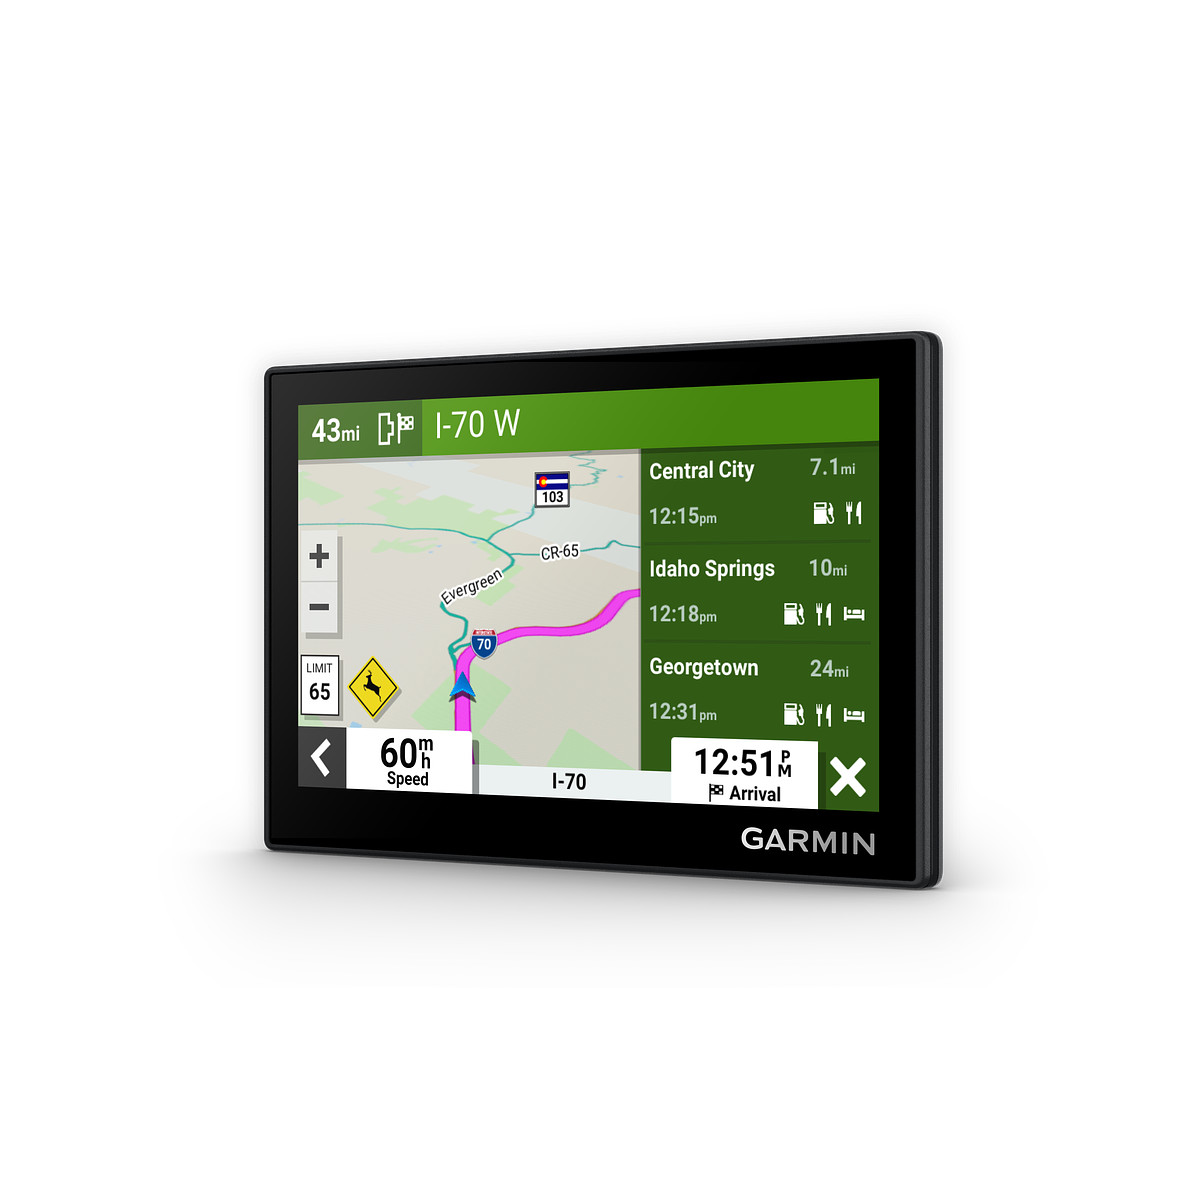  Garmin eTrex Serie navegador GPS, Negro : Electrónica